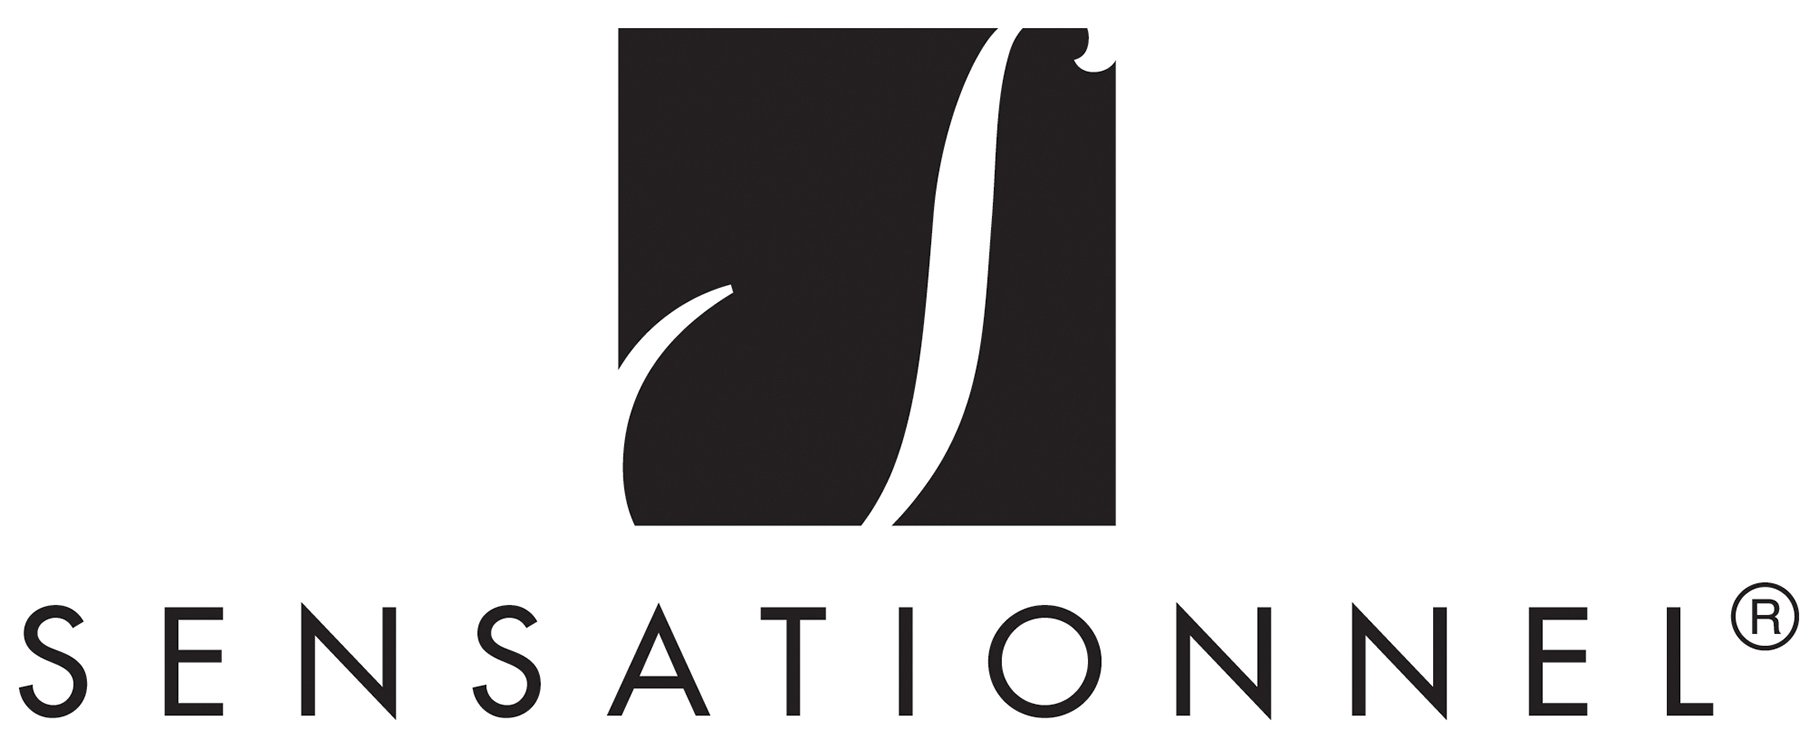 Sensationnel(Hairzone)Logo.jpg